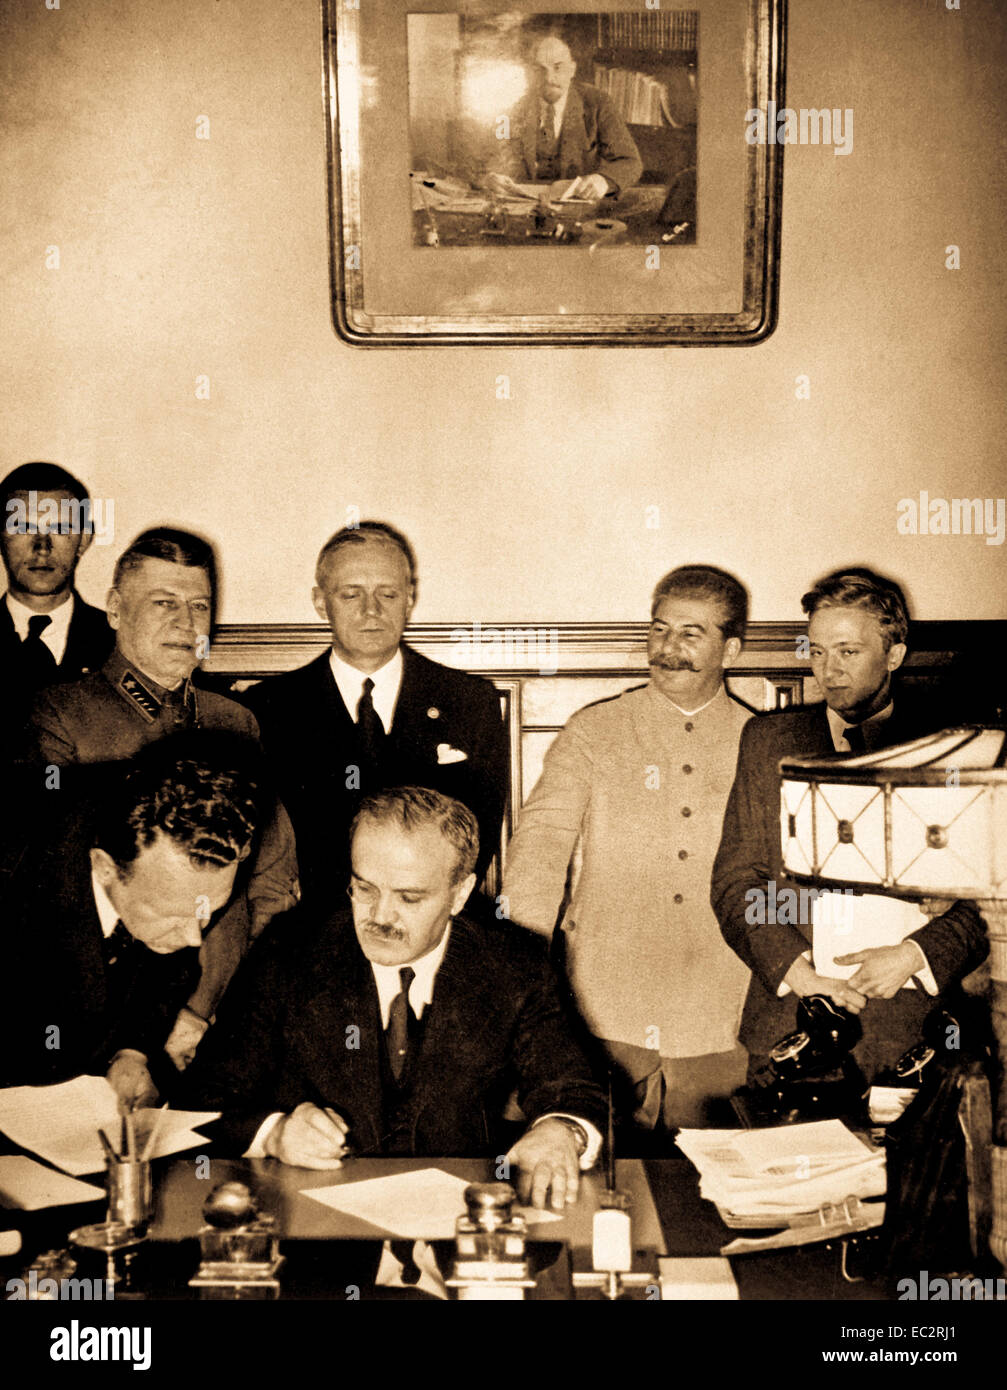 Il ministro degli esteri sovietico molotov segni il tedesco-sovietica patto nonaggression; Joachim von Ribbentrop e Josef Stalin stare dietro di lui, Mosca, 23 agosto 1939 Foto Stock